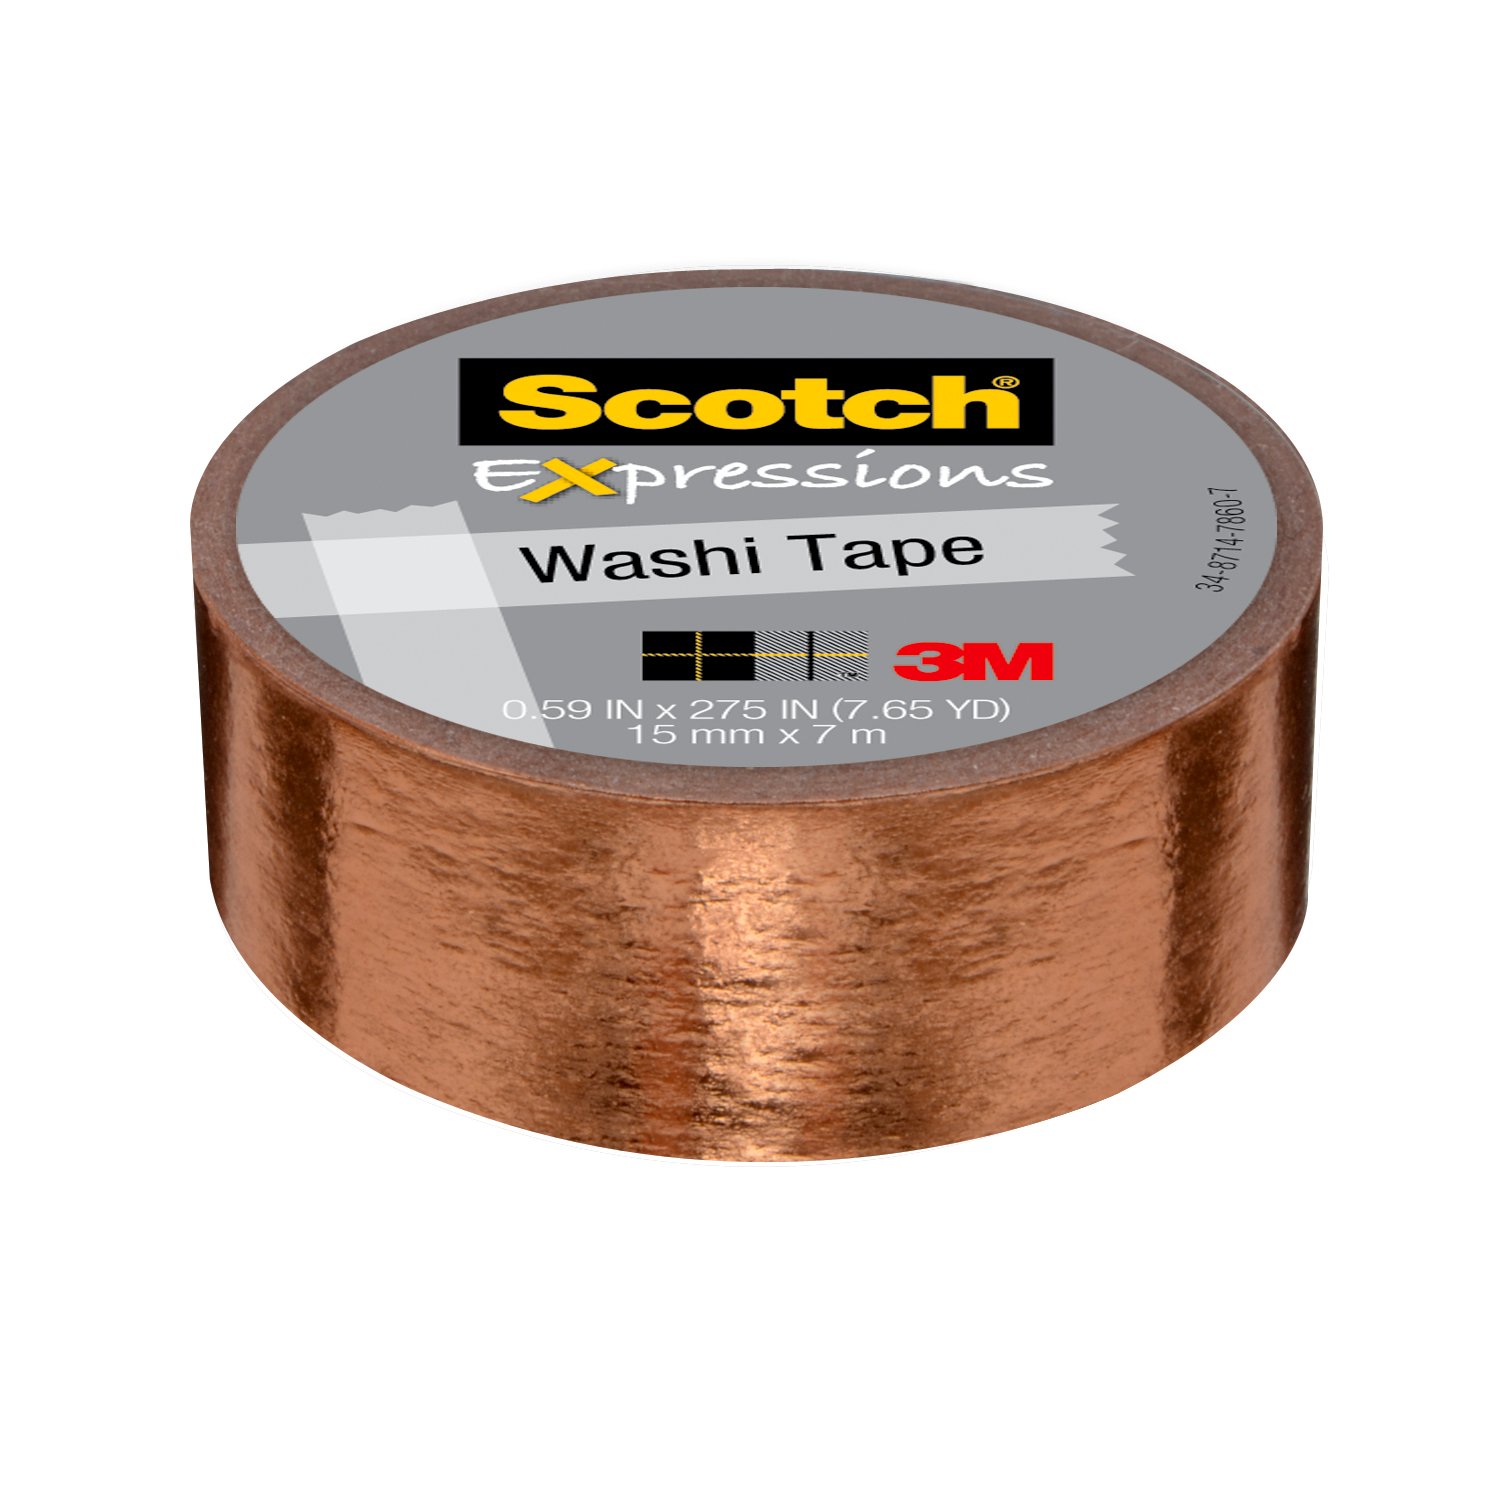 7010373015 - Scotch Expressions Washi Tape C614-CPR, .59 in x 275 in (15 mm x 7 m)
Copper Foil